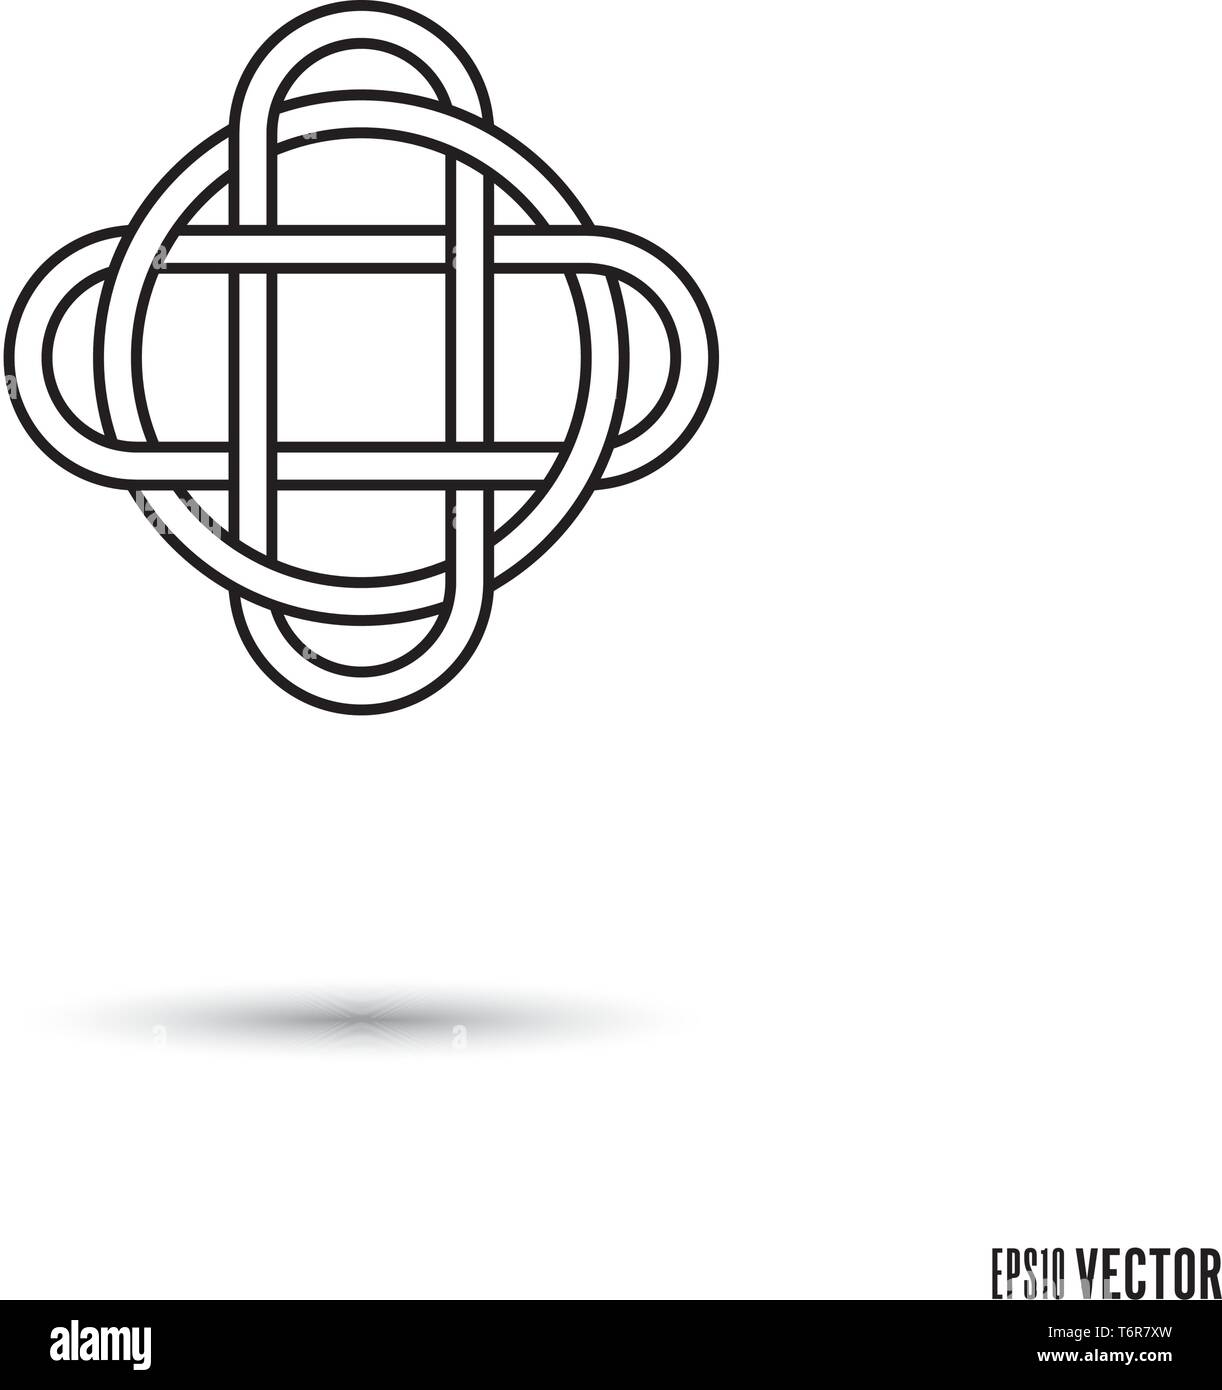 Keltischer Knoten, verflochten unendliche Schleife struktursymbol Vector Illustration Stock Vektor